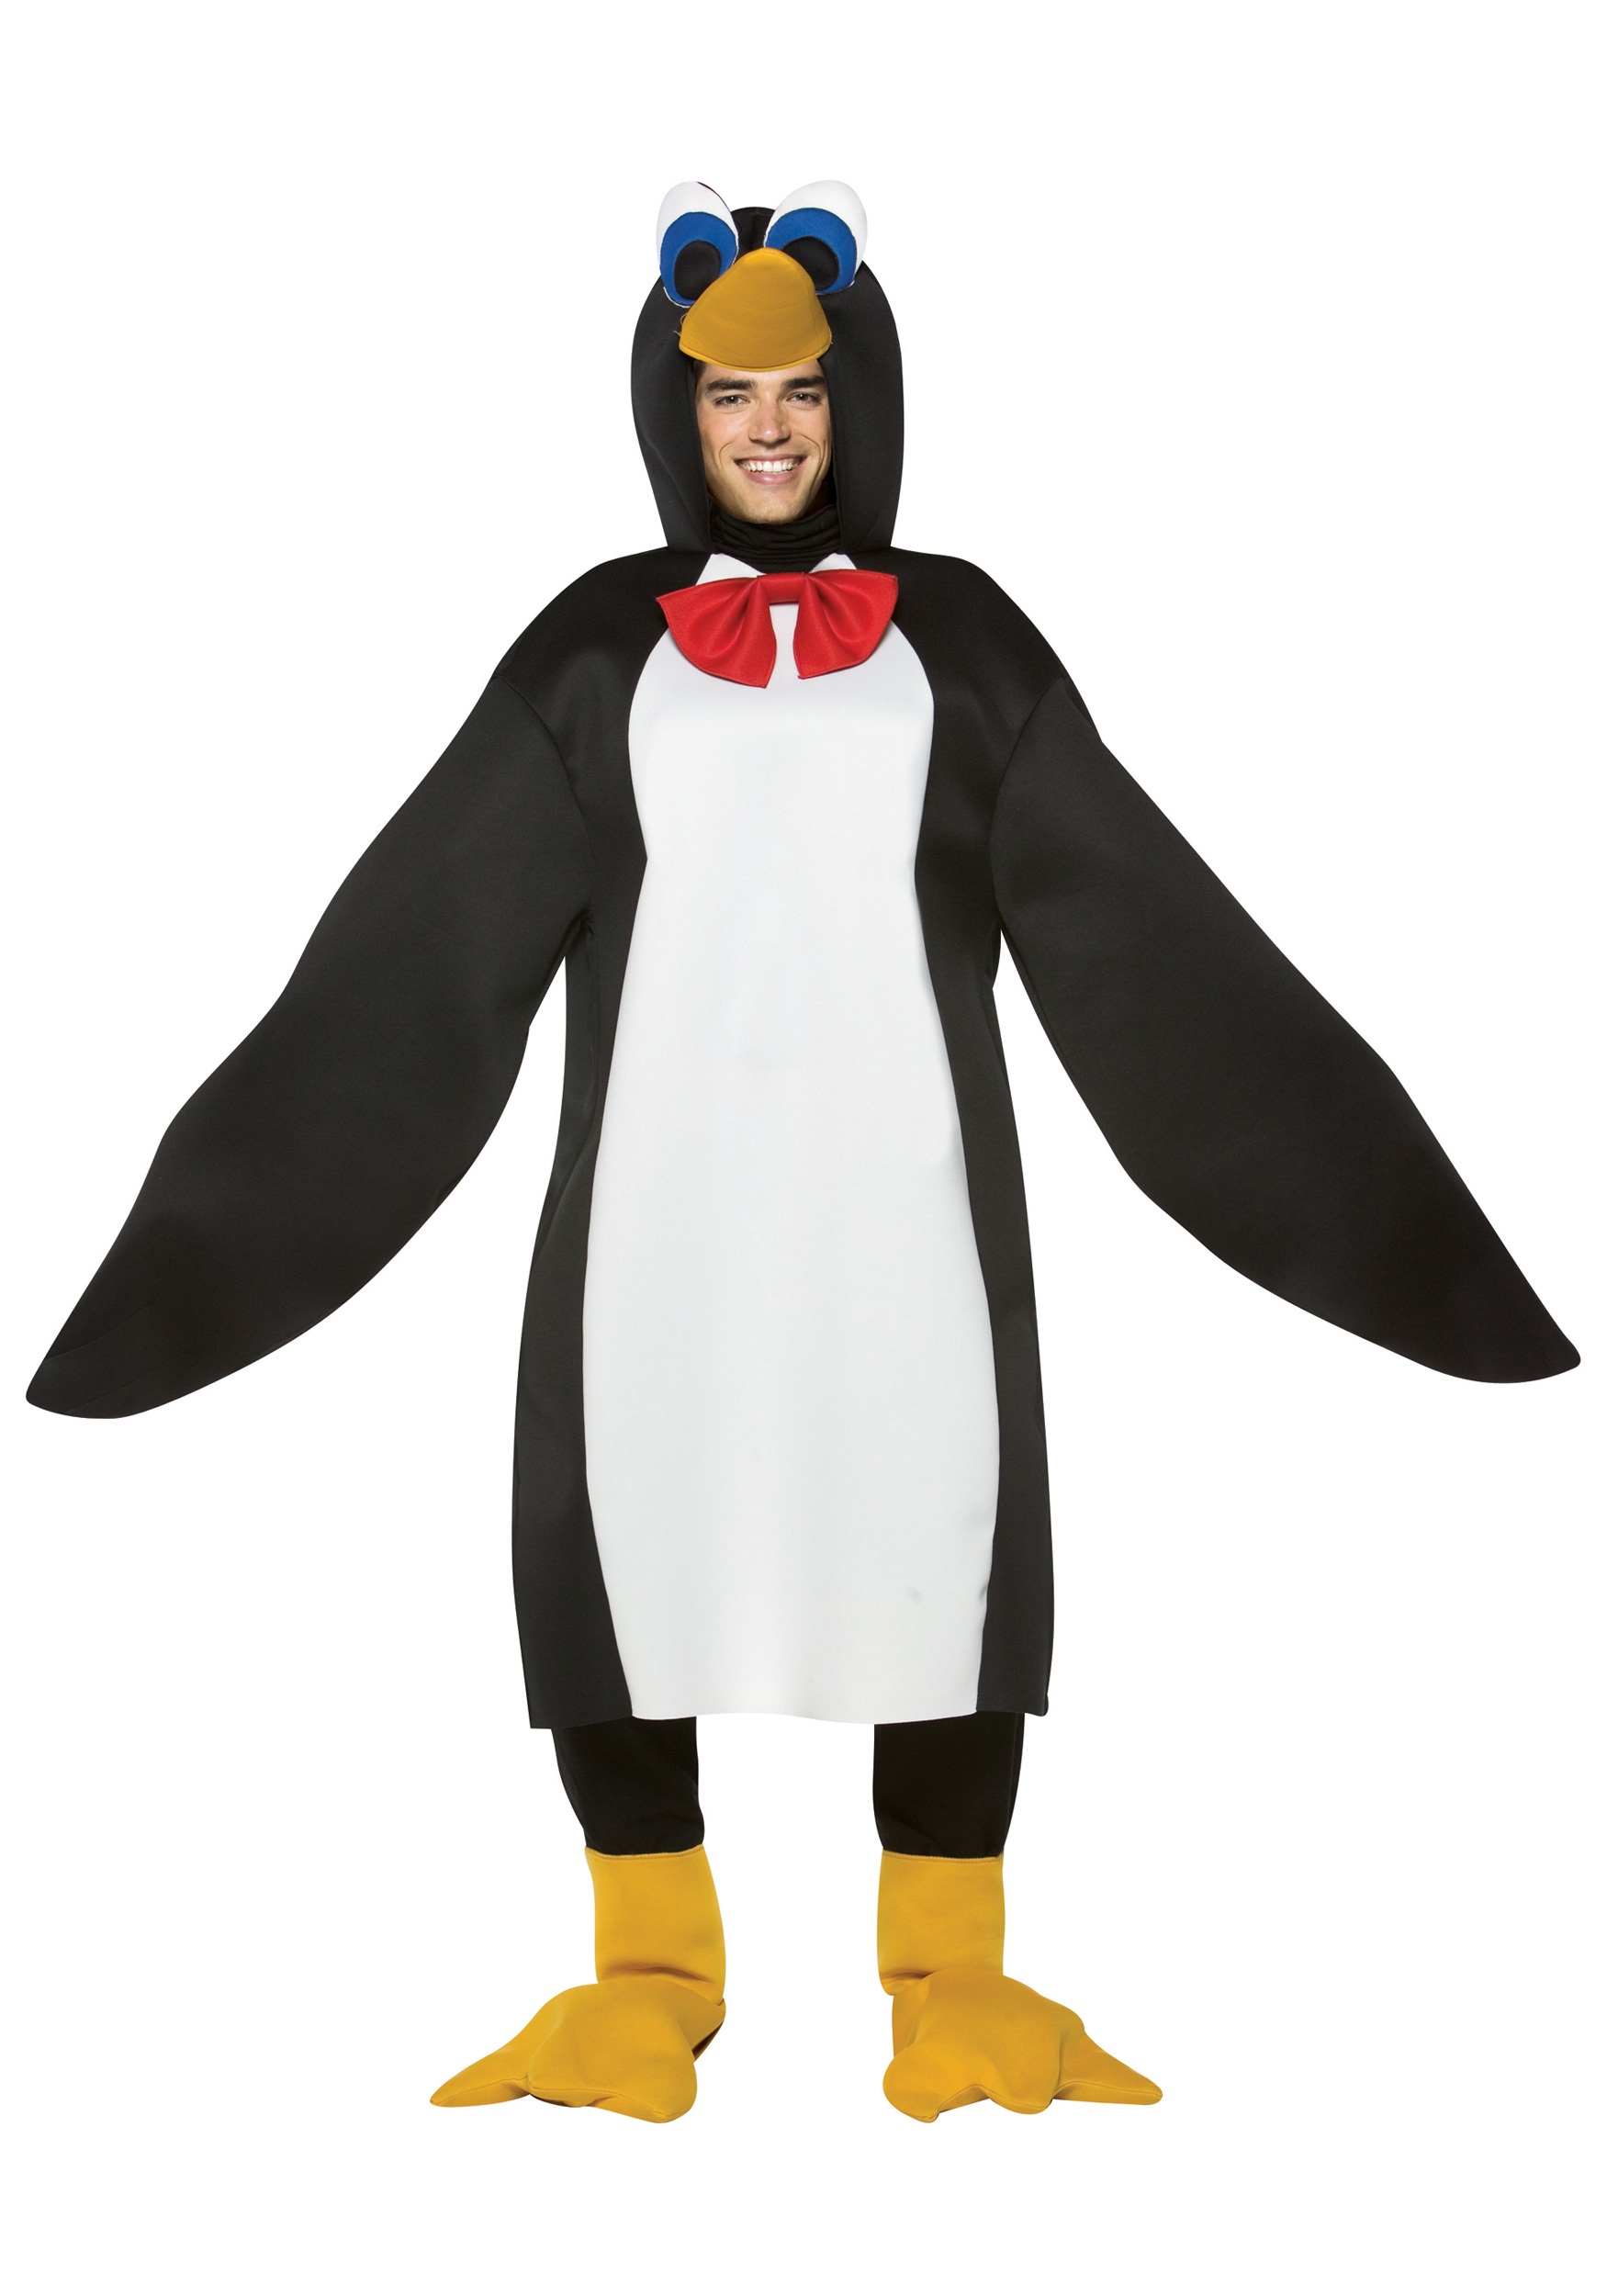 Image of Adult Penguin Costume ID RA307-ST